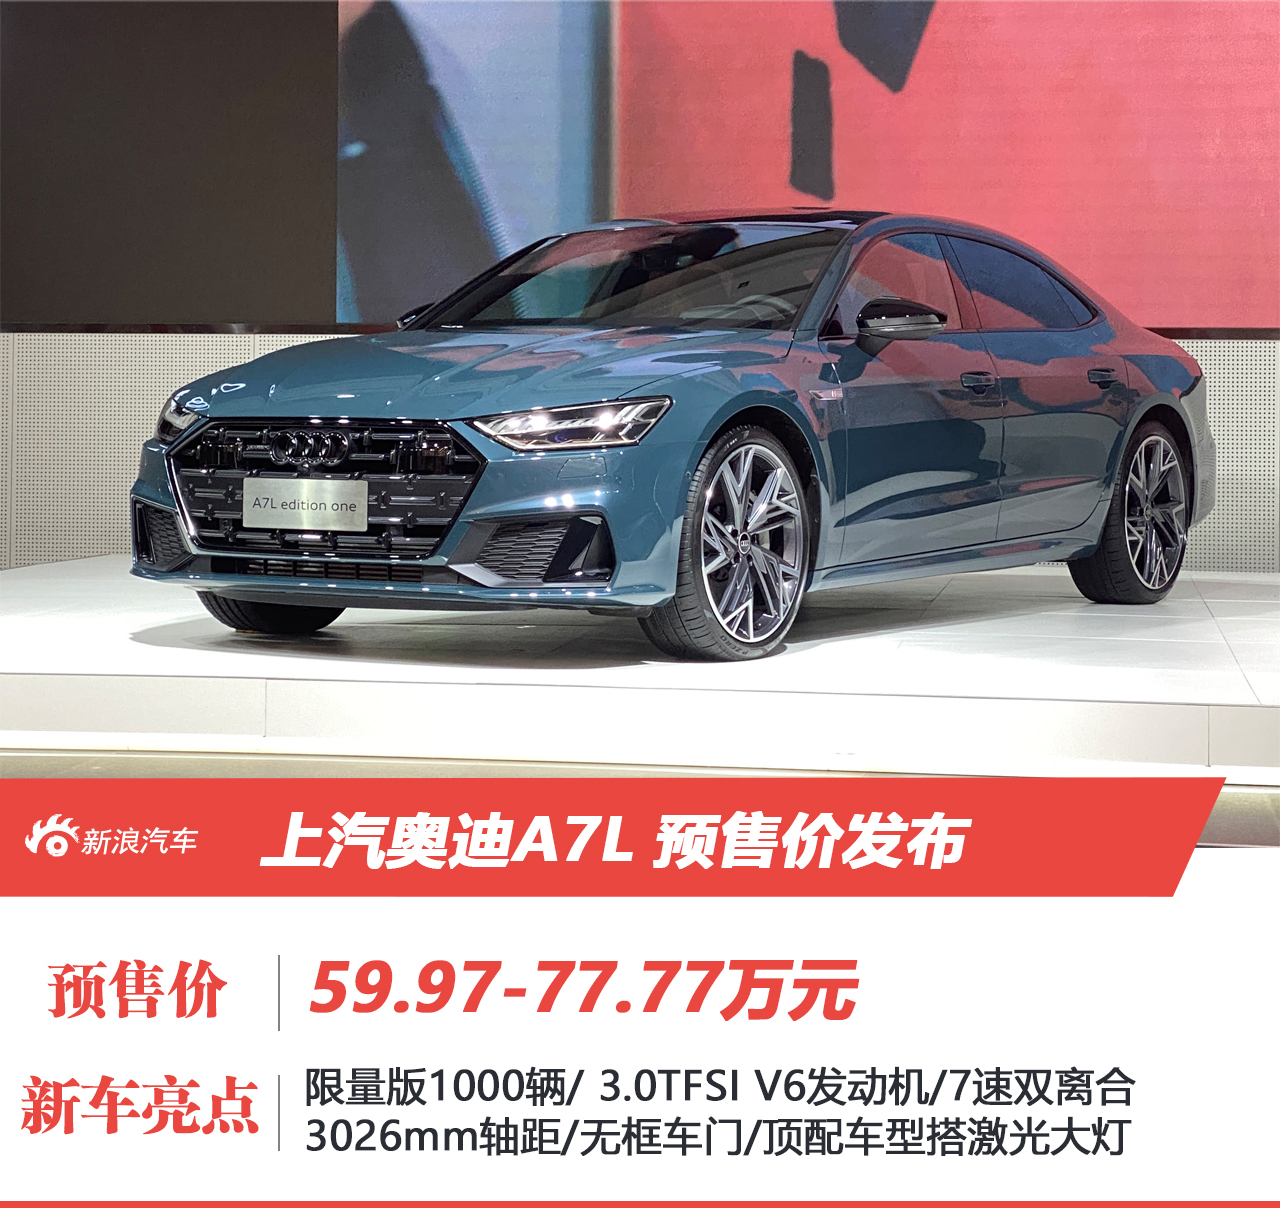 上汽奥迪A7L正式投产 预售价59.97-77.77万元